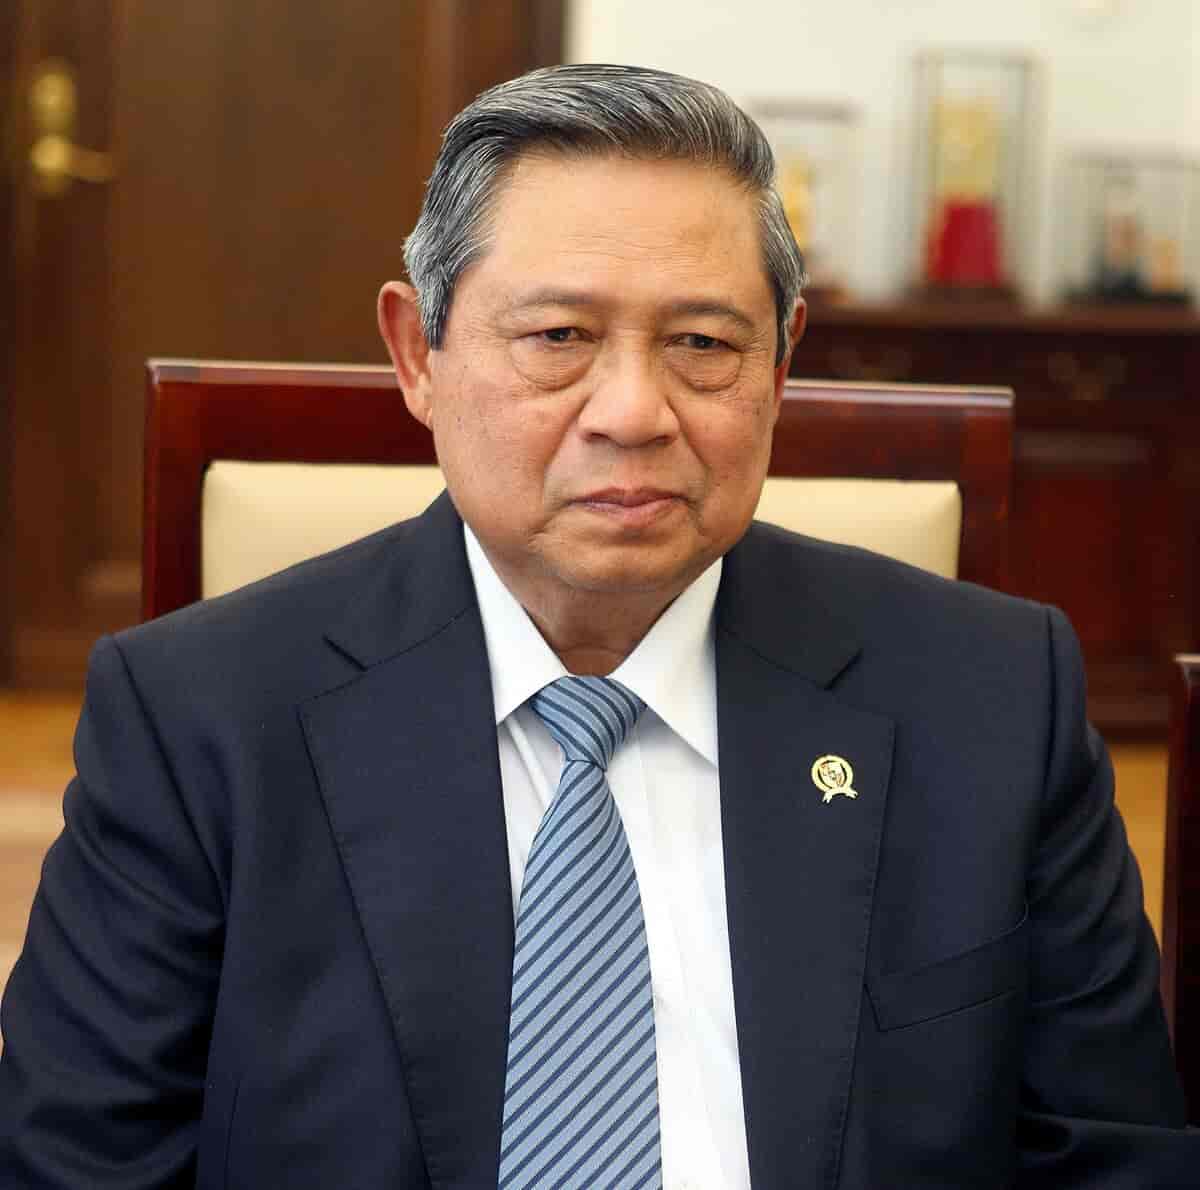 Susilo Bambang Yudhoyono